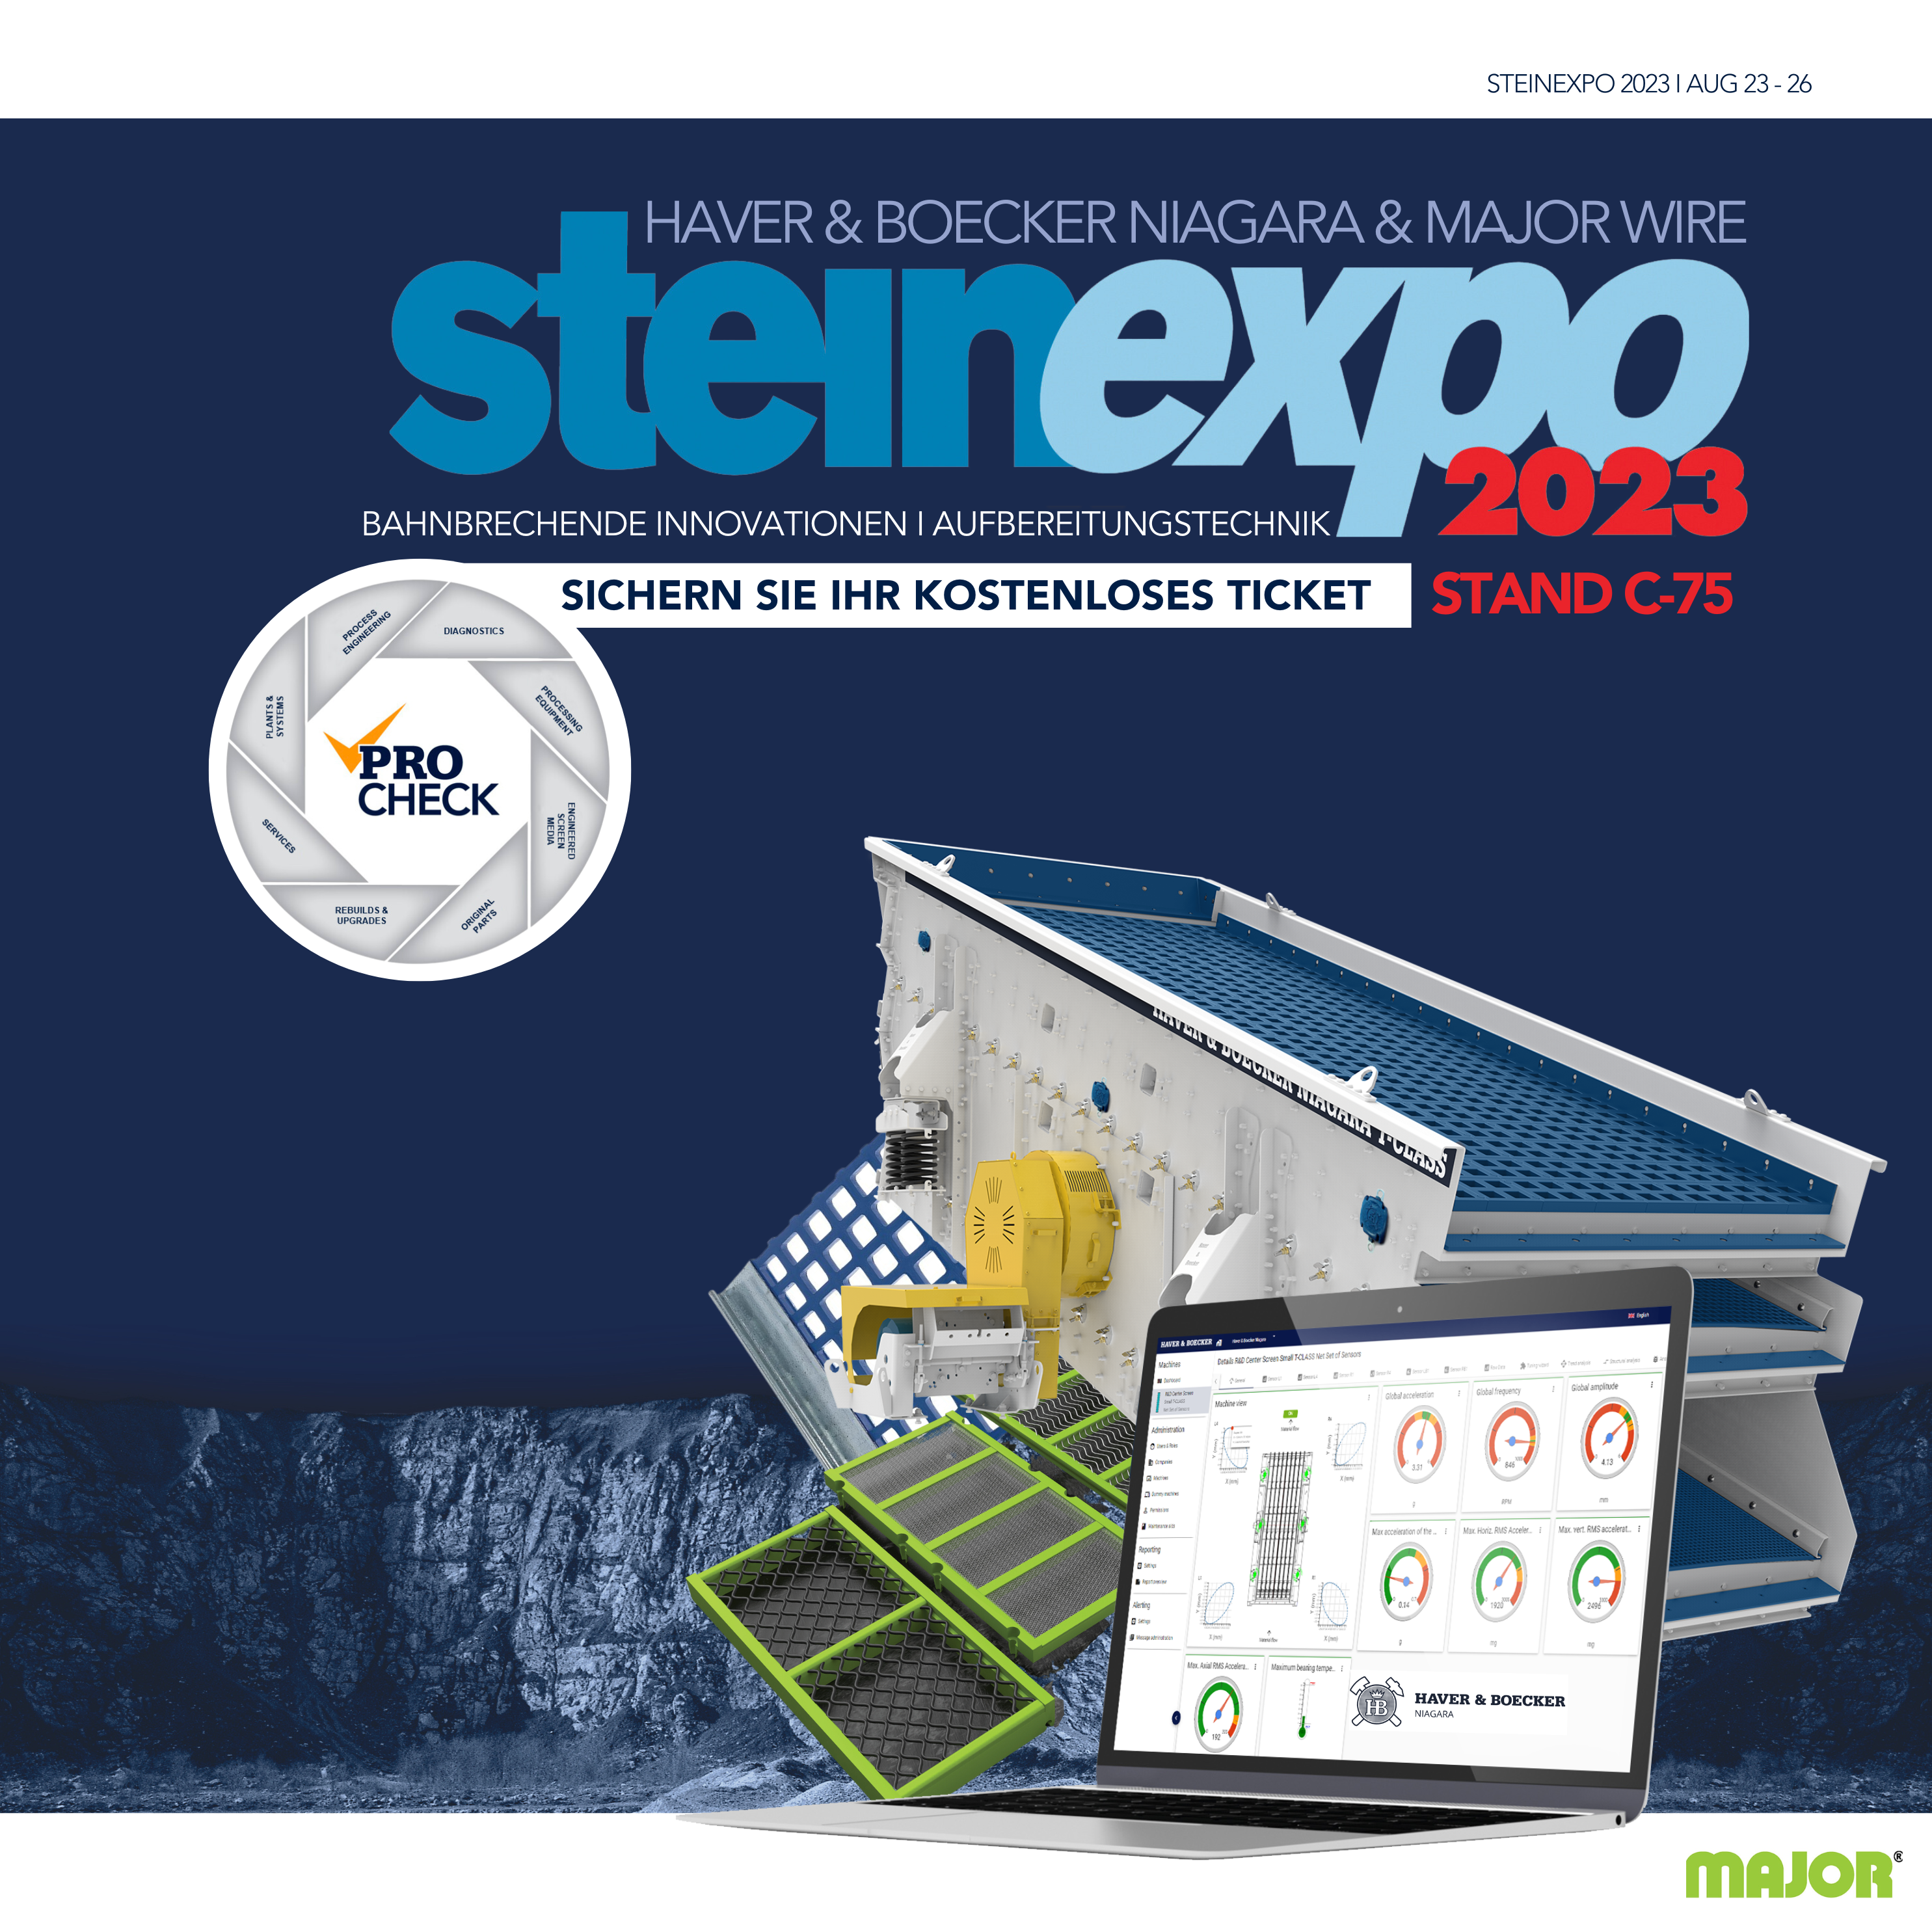 Haver & Boecker Niagara auf der Steinexpo 2023, Stand C-75: Vorstellung von bahnbrechenden Innovationen in der Aufbereitungstechnik